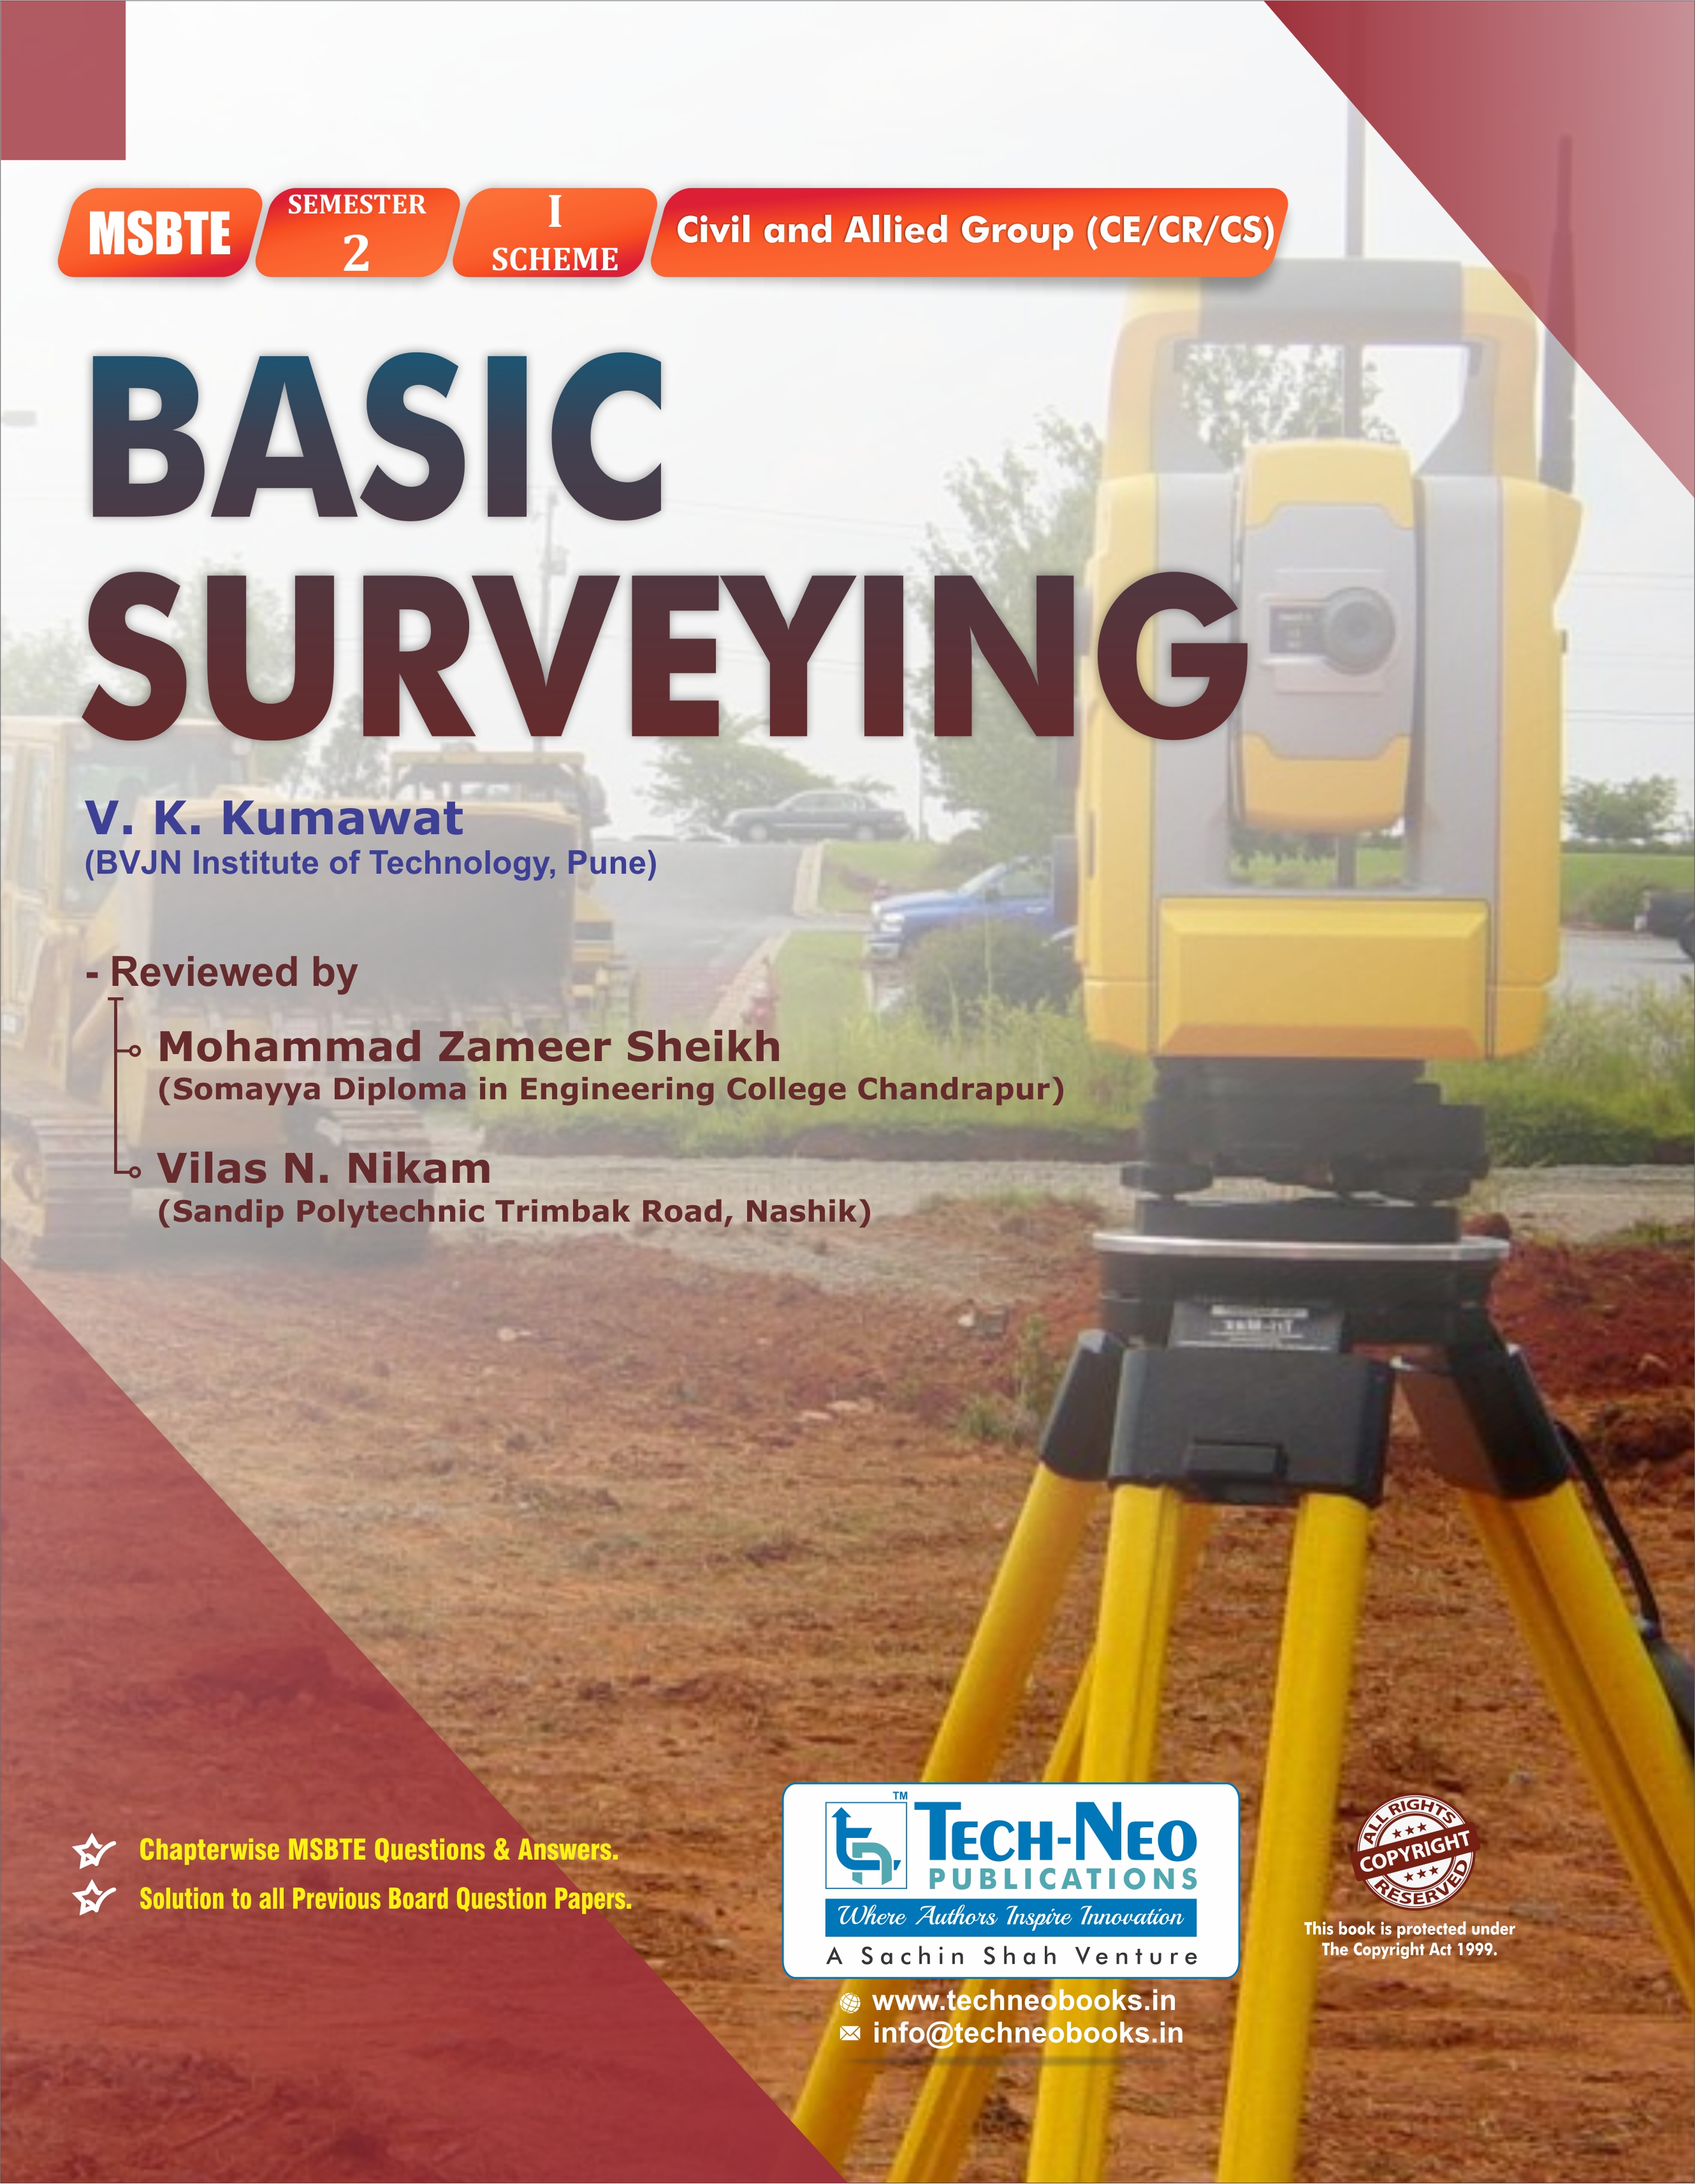 Basic surveying